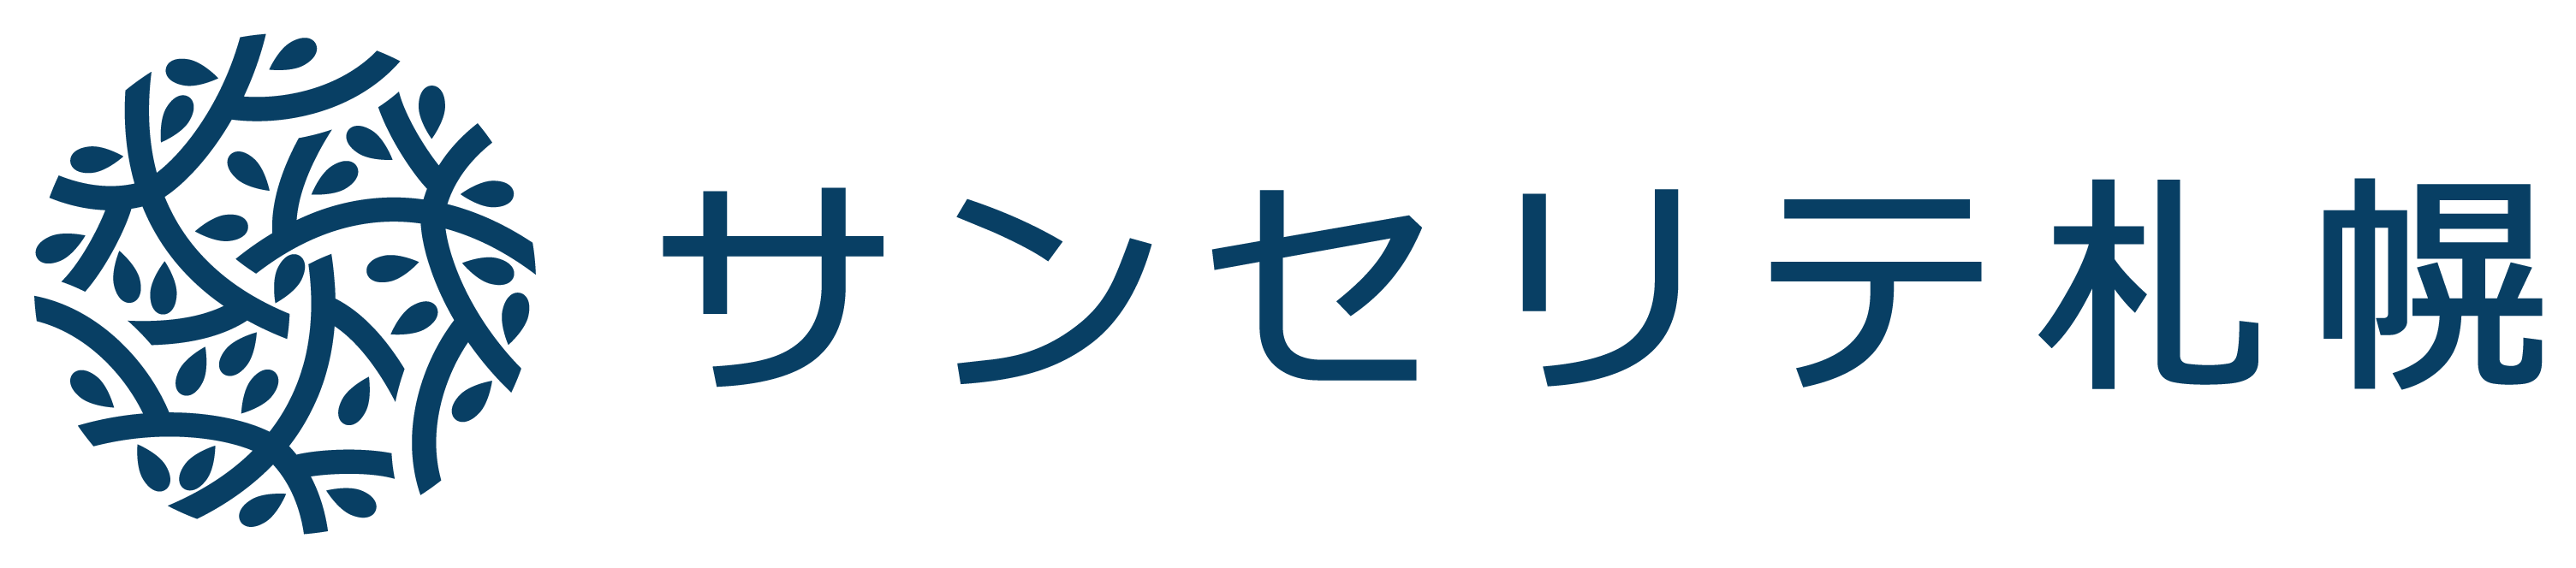 株式会社サンセリテ札幌ロゴ